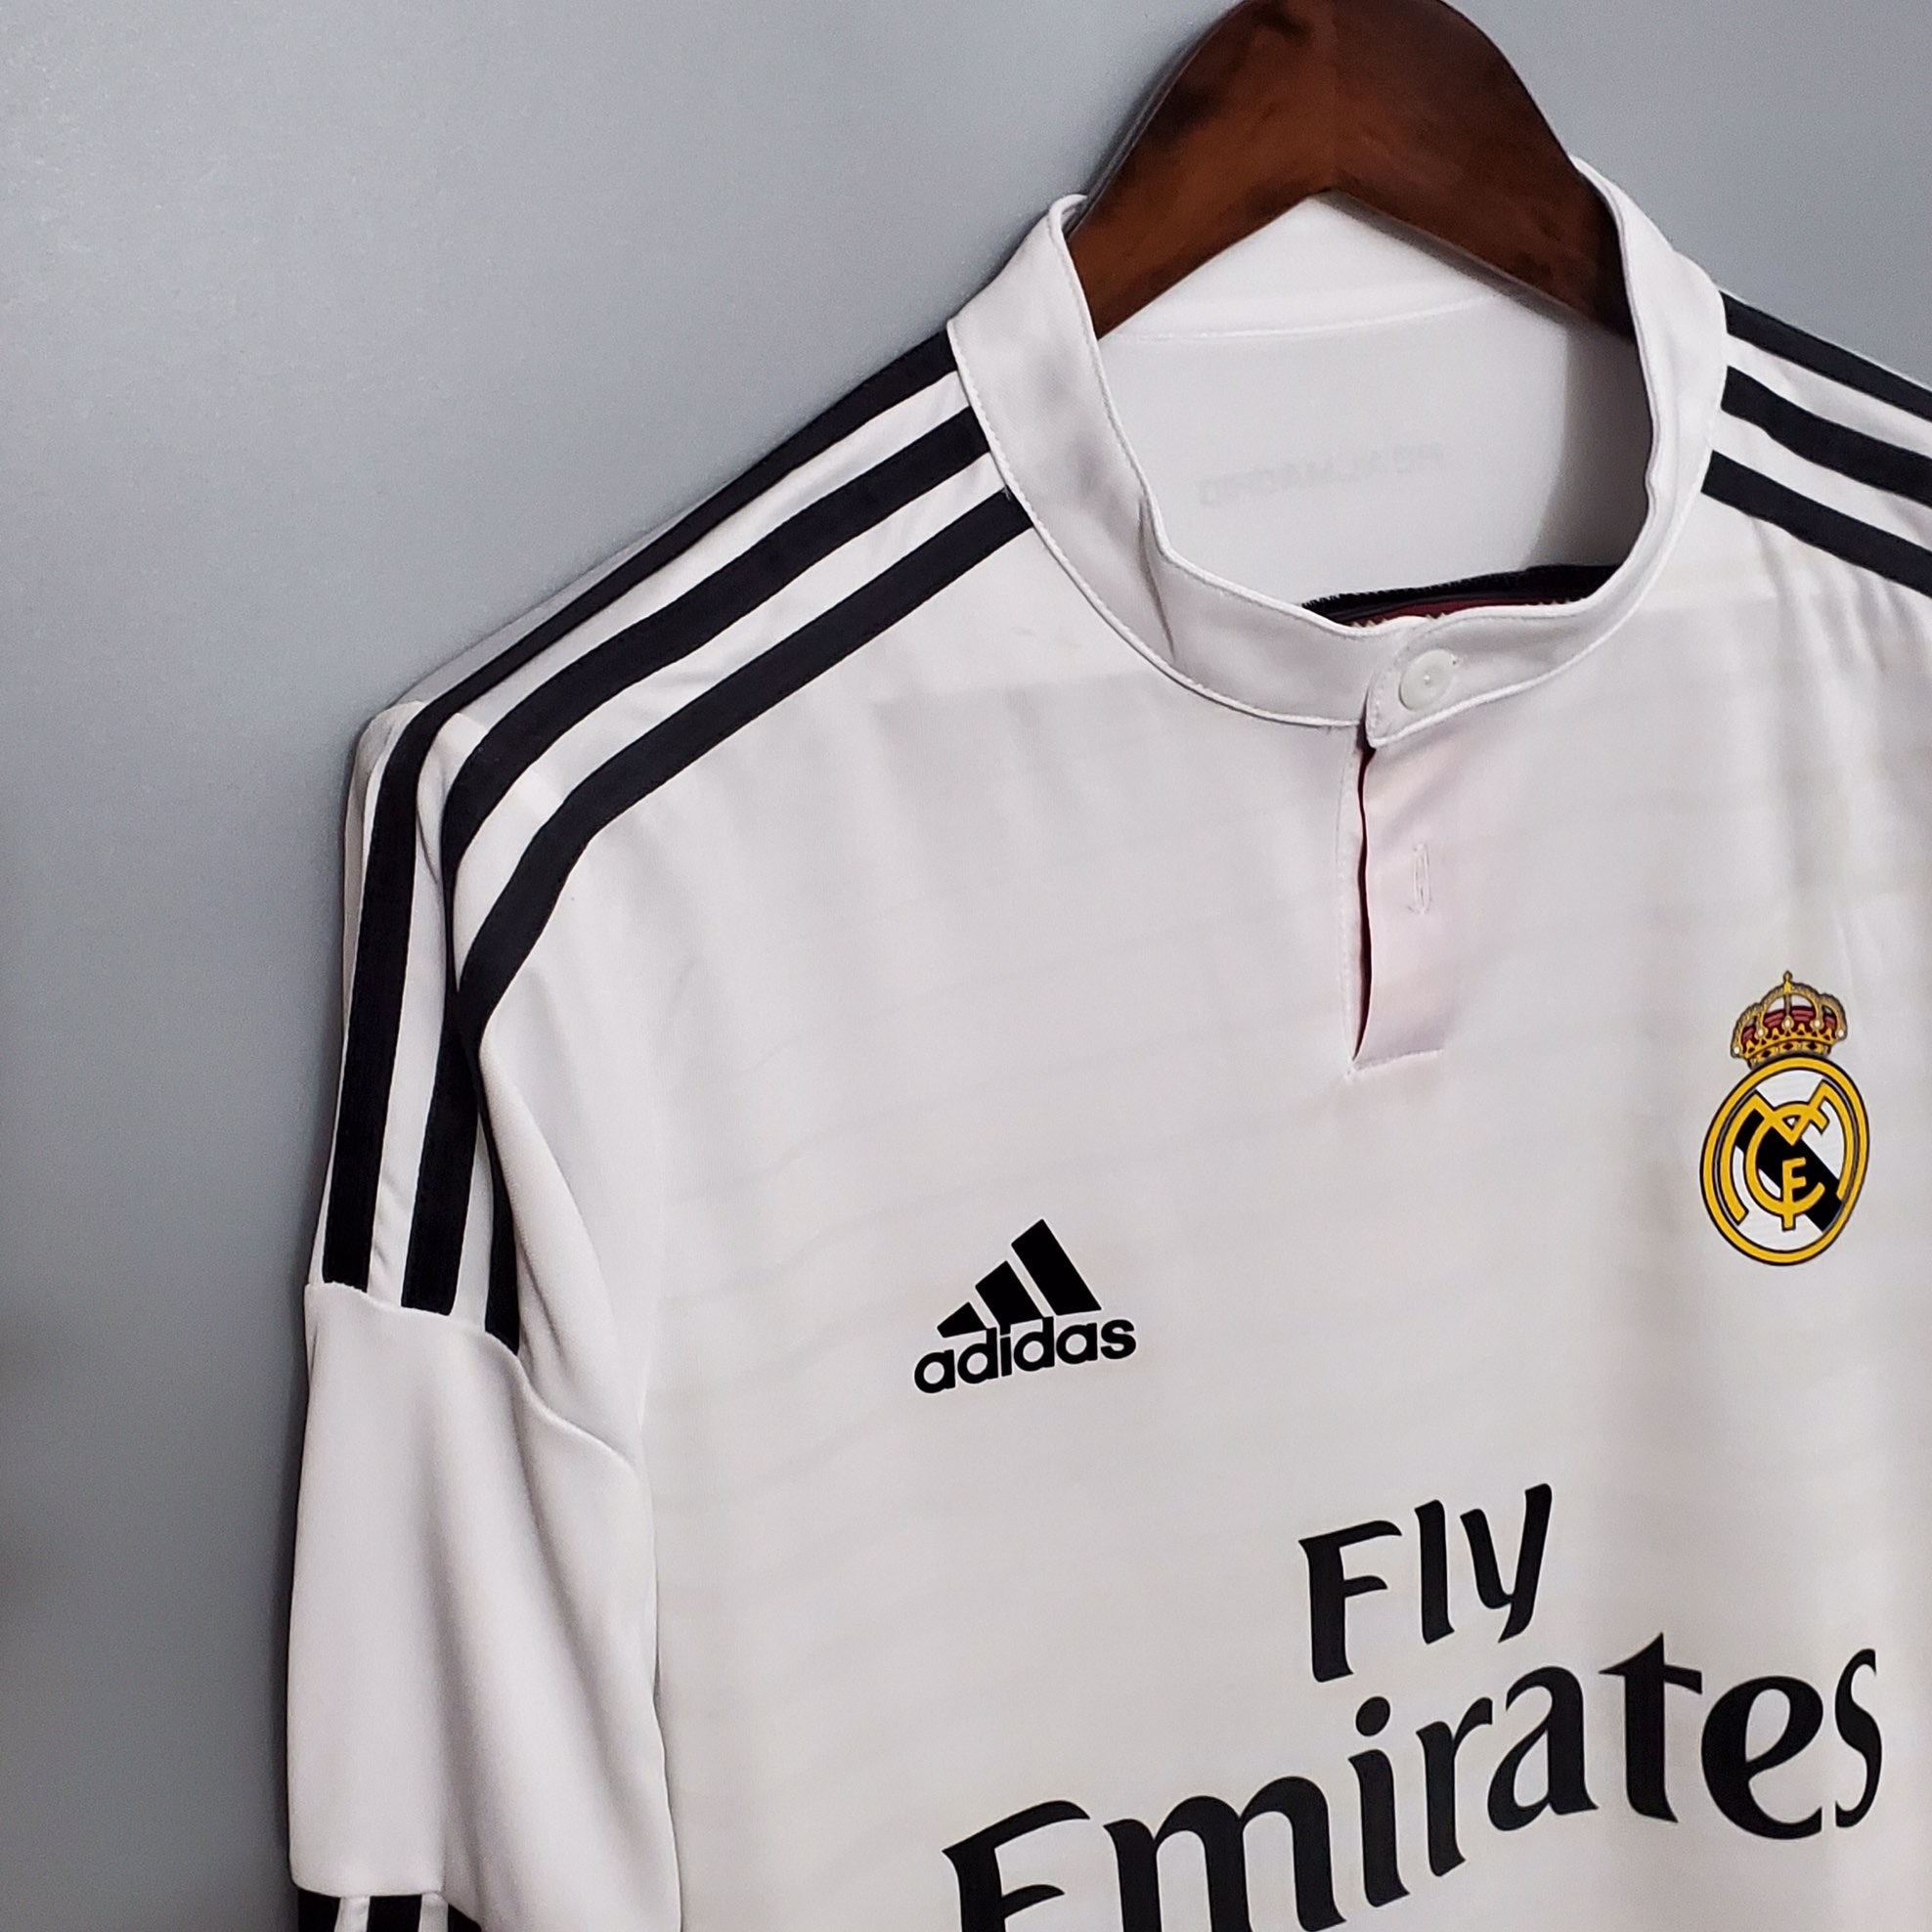 Real madrid купить футболку. Футболка adidas real Madrid. Форма Реал Мадрид 14-15. Форма Реал Мадрид 2014. Футболка Реал Мадрид с длинным рукавом 2016.